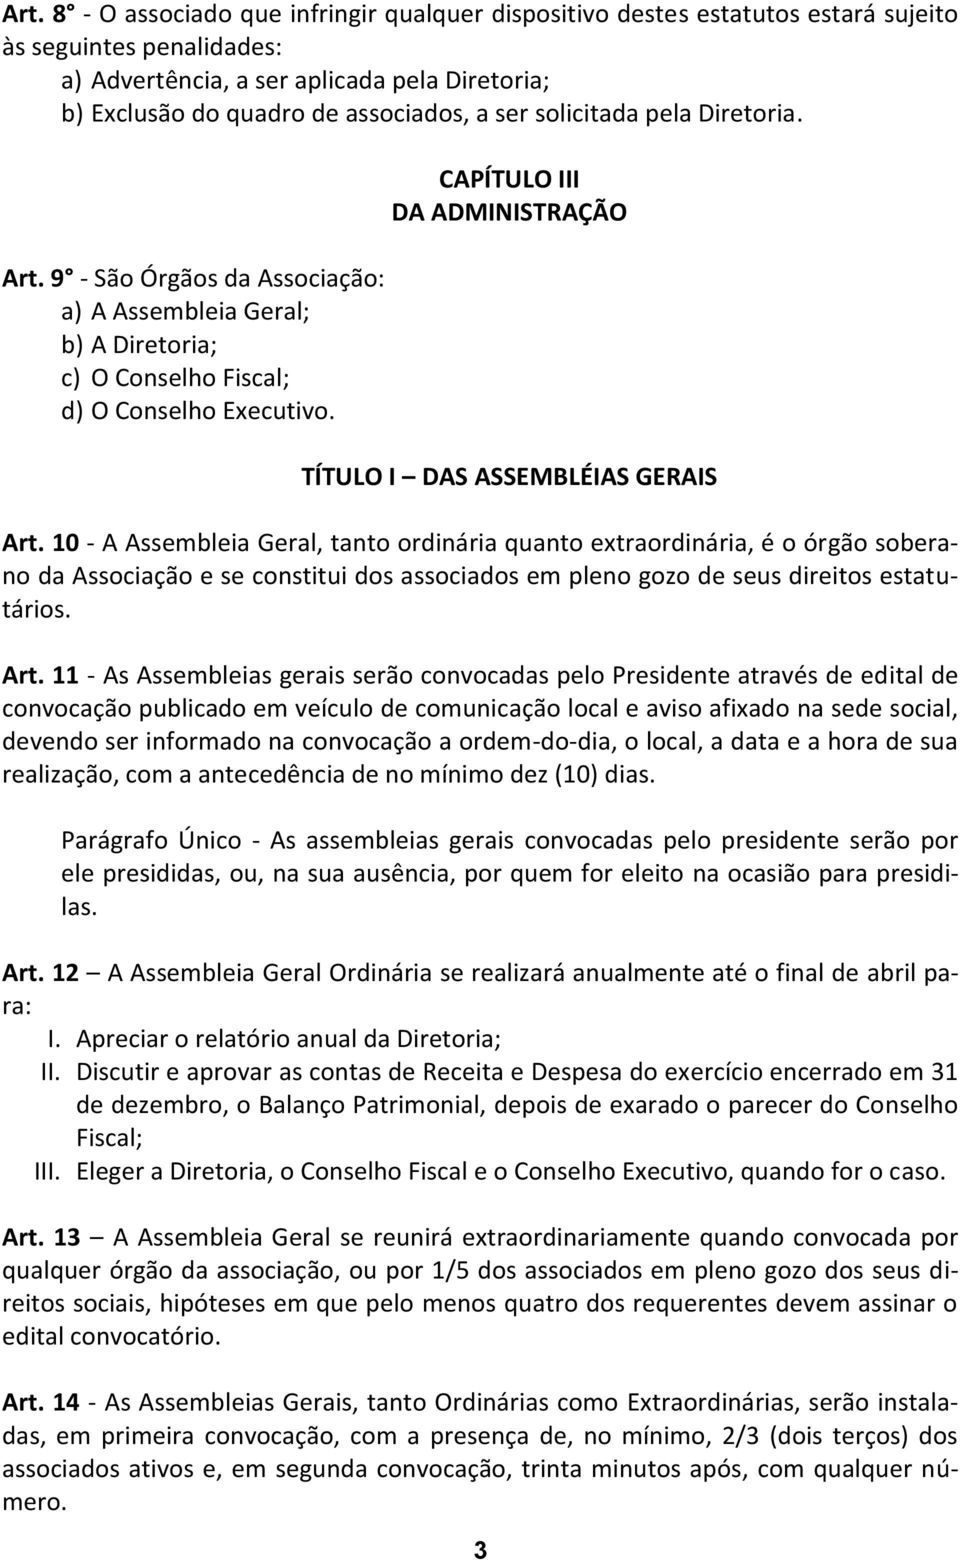 CAPÍTULO III DA ADMINISTRAÇÃO TÍTULO I DAS ASSEMBLÉIAS GERAIS Art.